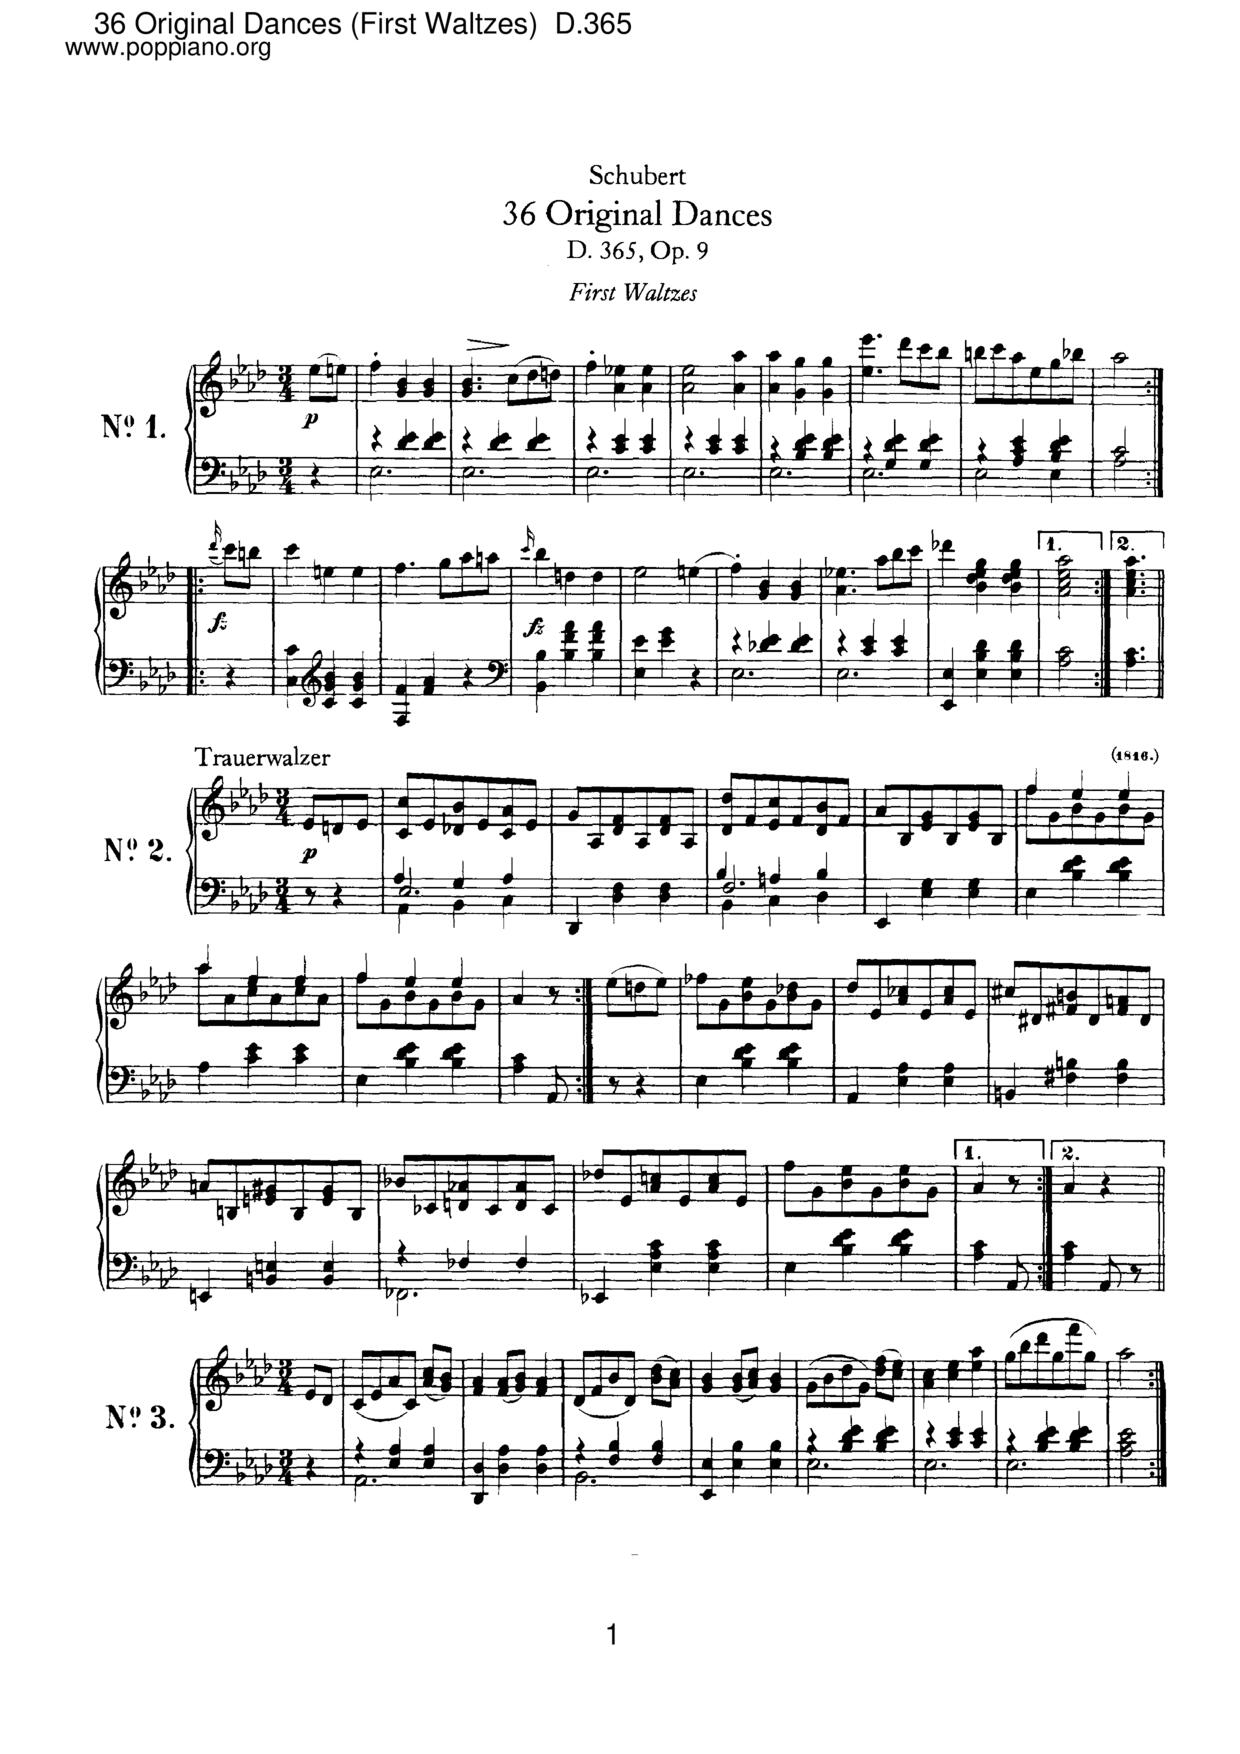 36 Original Dances (First Waltzes), D.365 (Op.9) Score